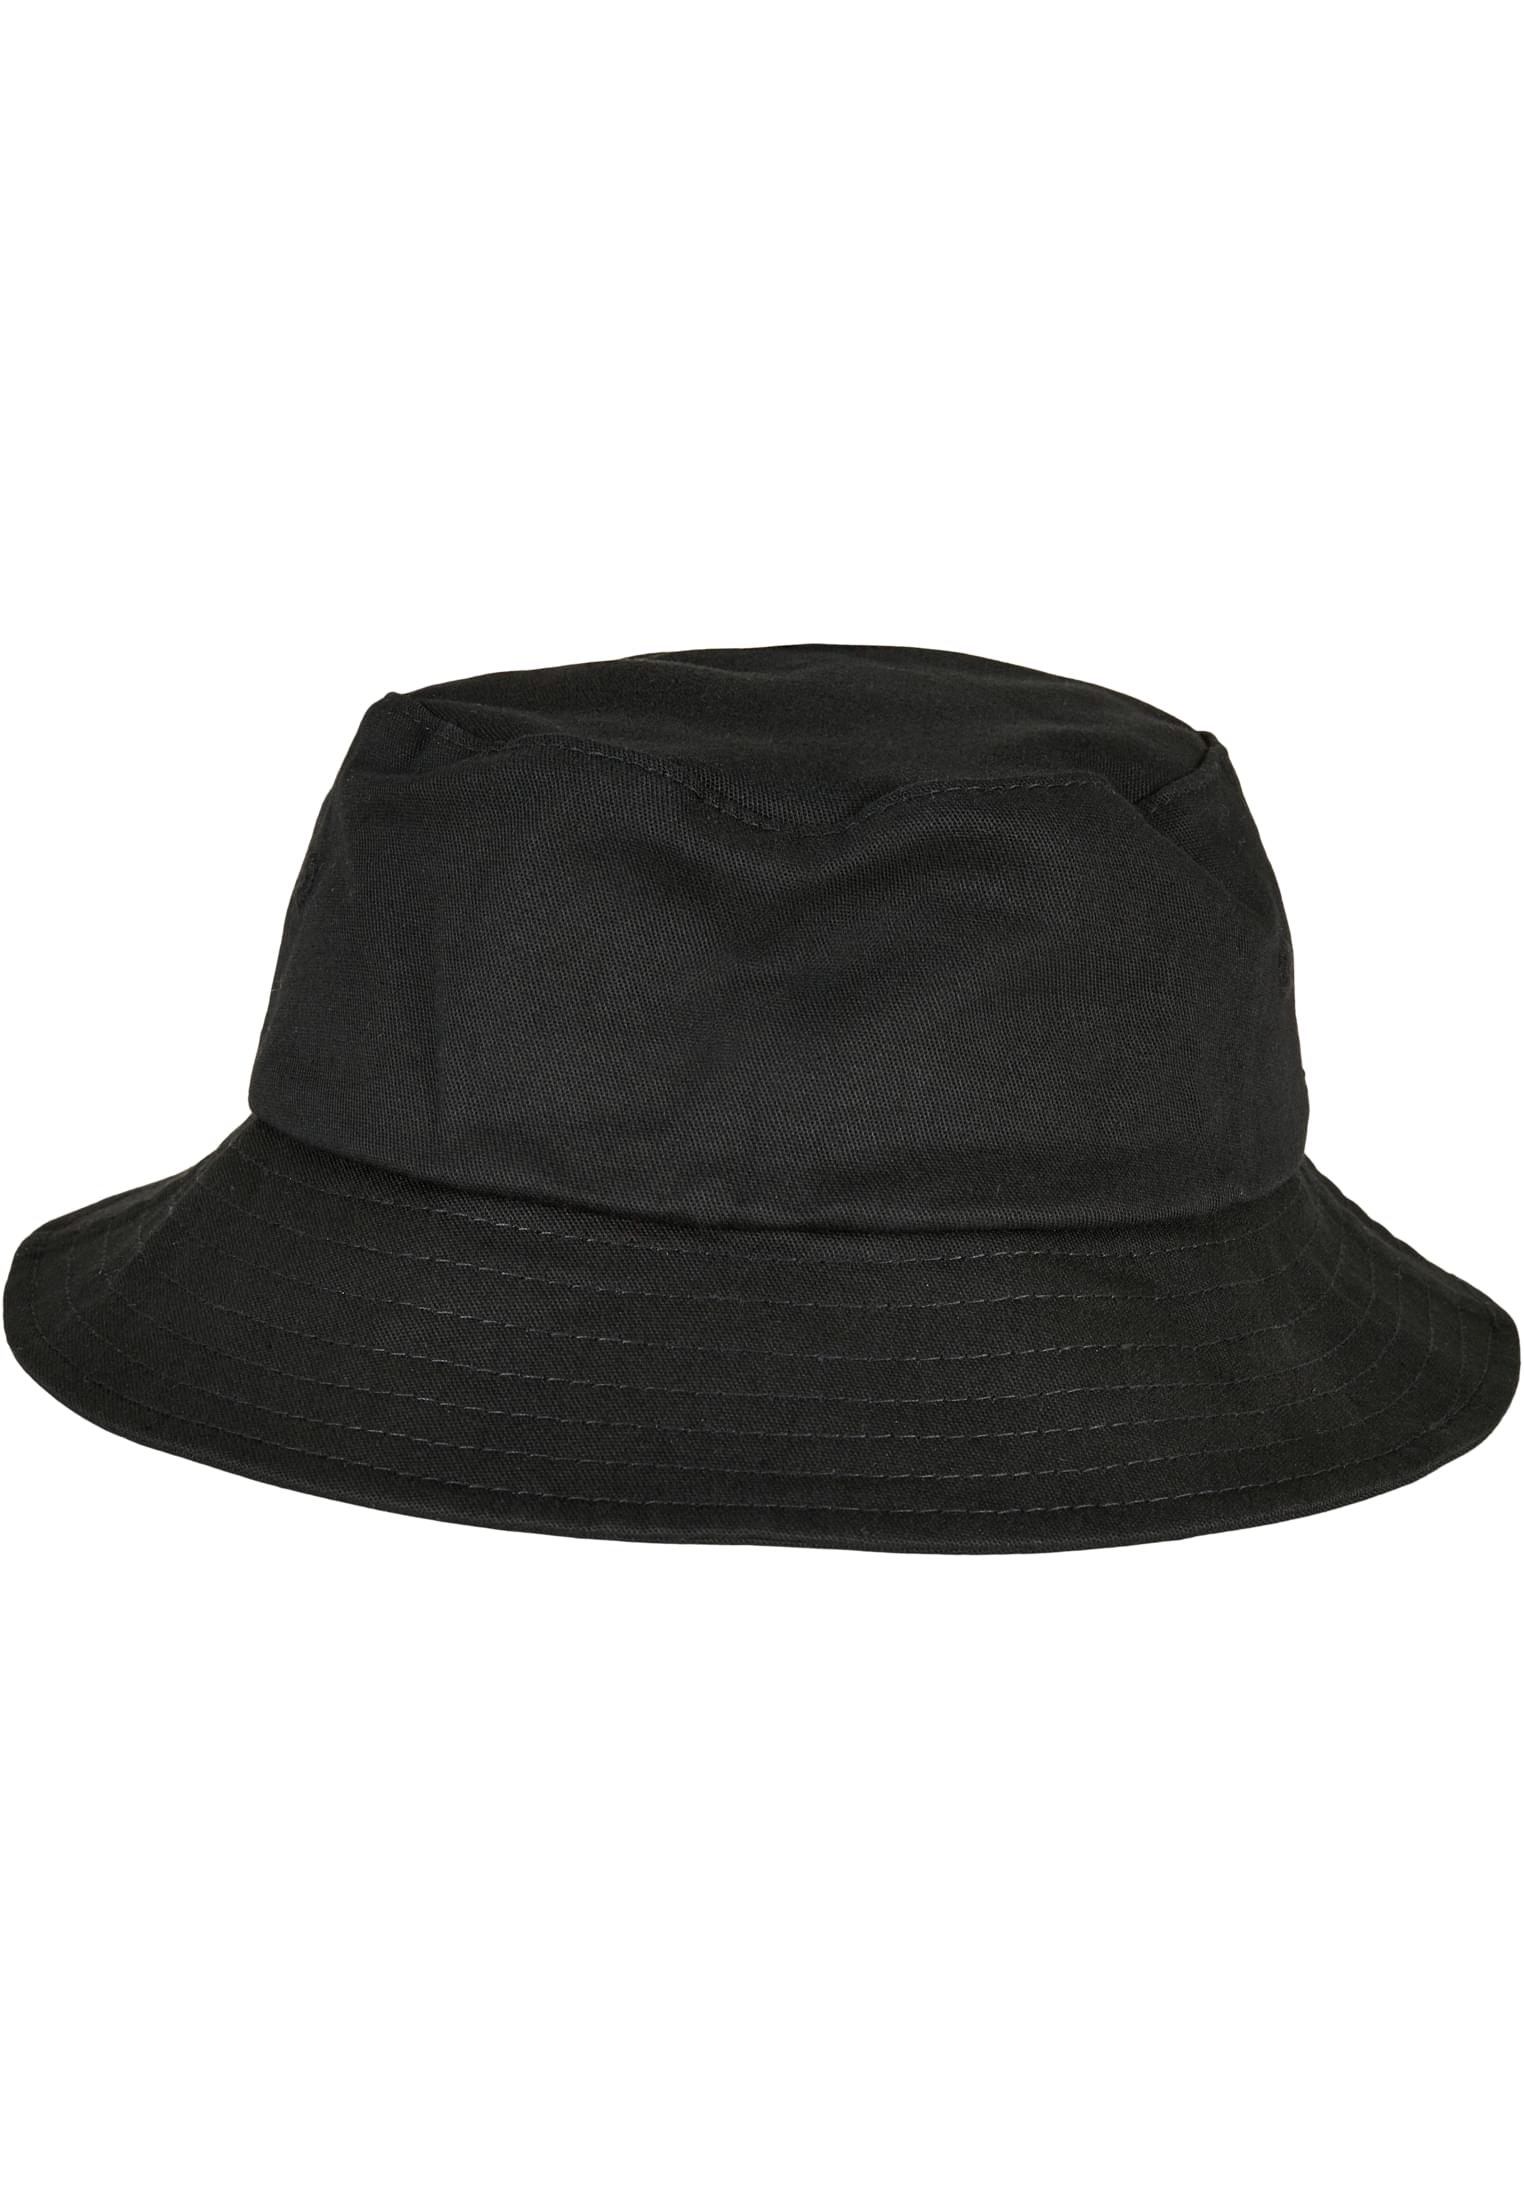 Бейсболка Flexfit Bucket Hat, черный